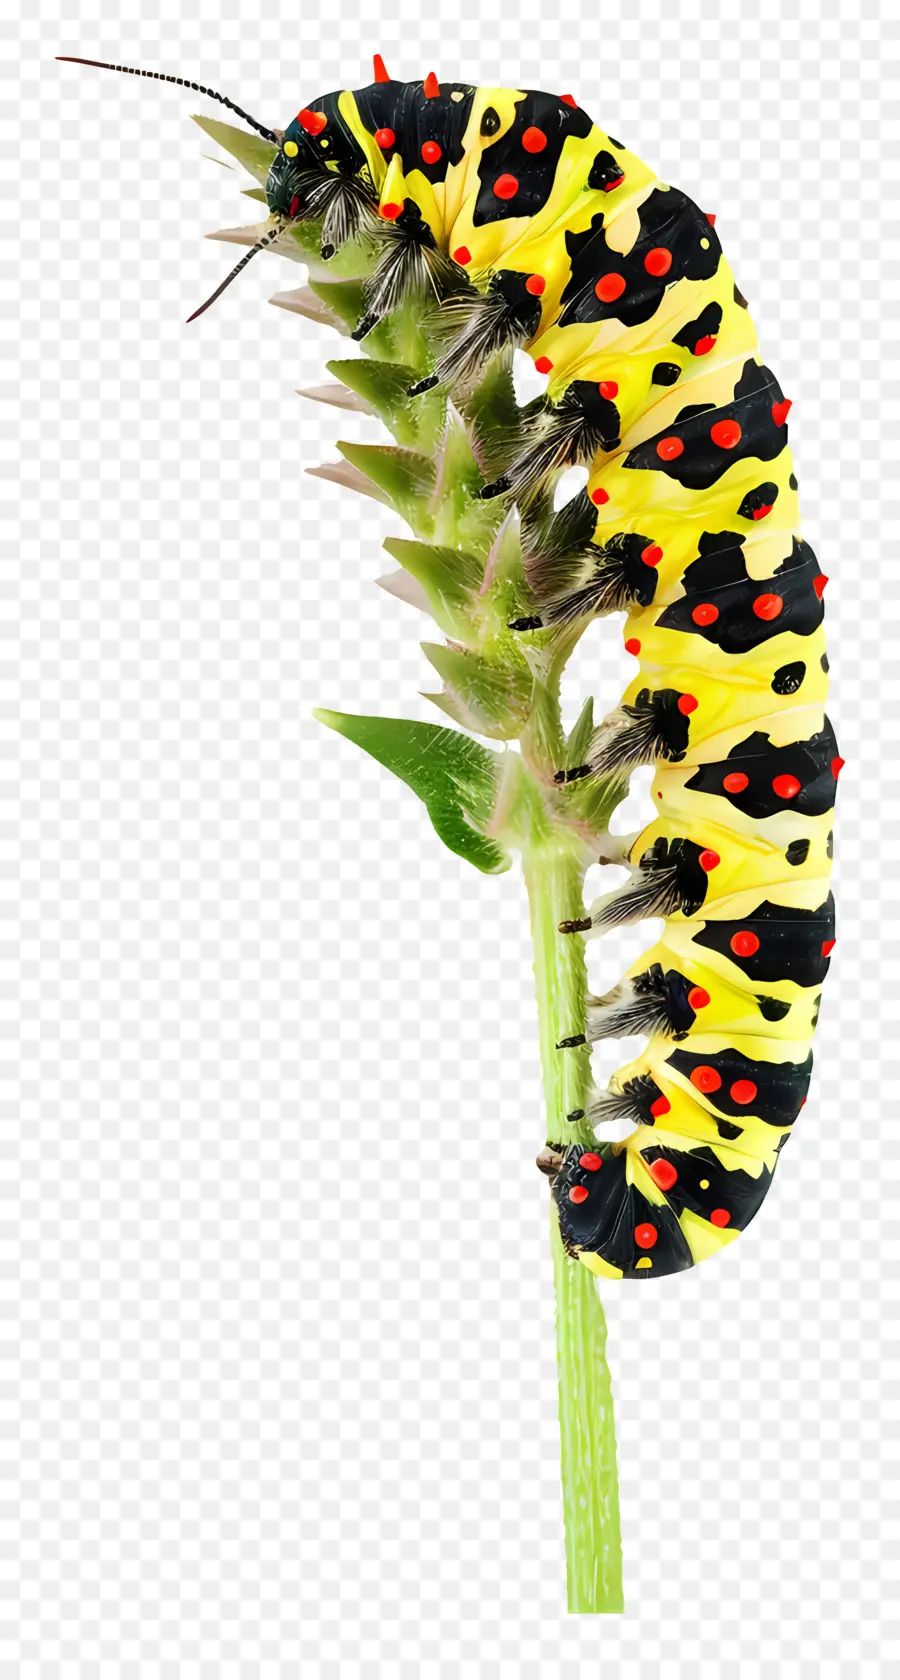 Côn bướm côn trùng Vườn Vườn Động vật hoang dã thiên nhiên - Sâu bướm lớn với các đốm màu vàng, đen, đỏ